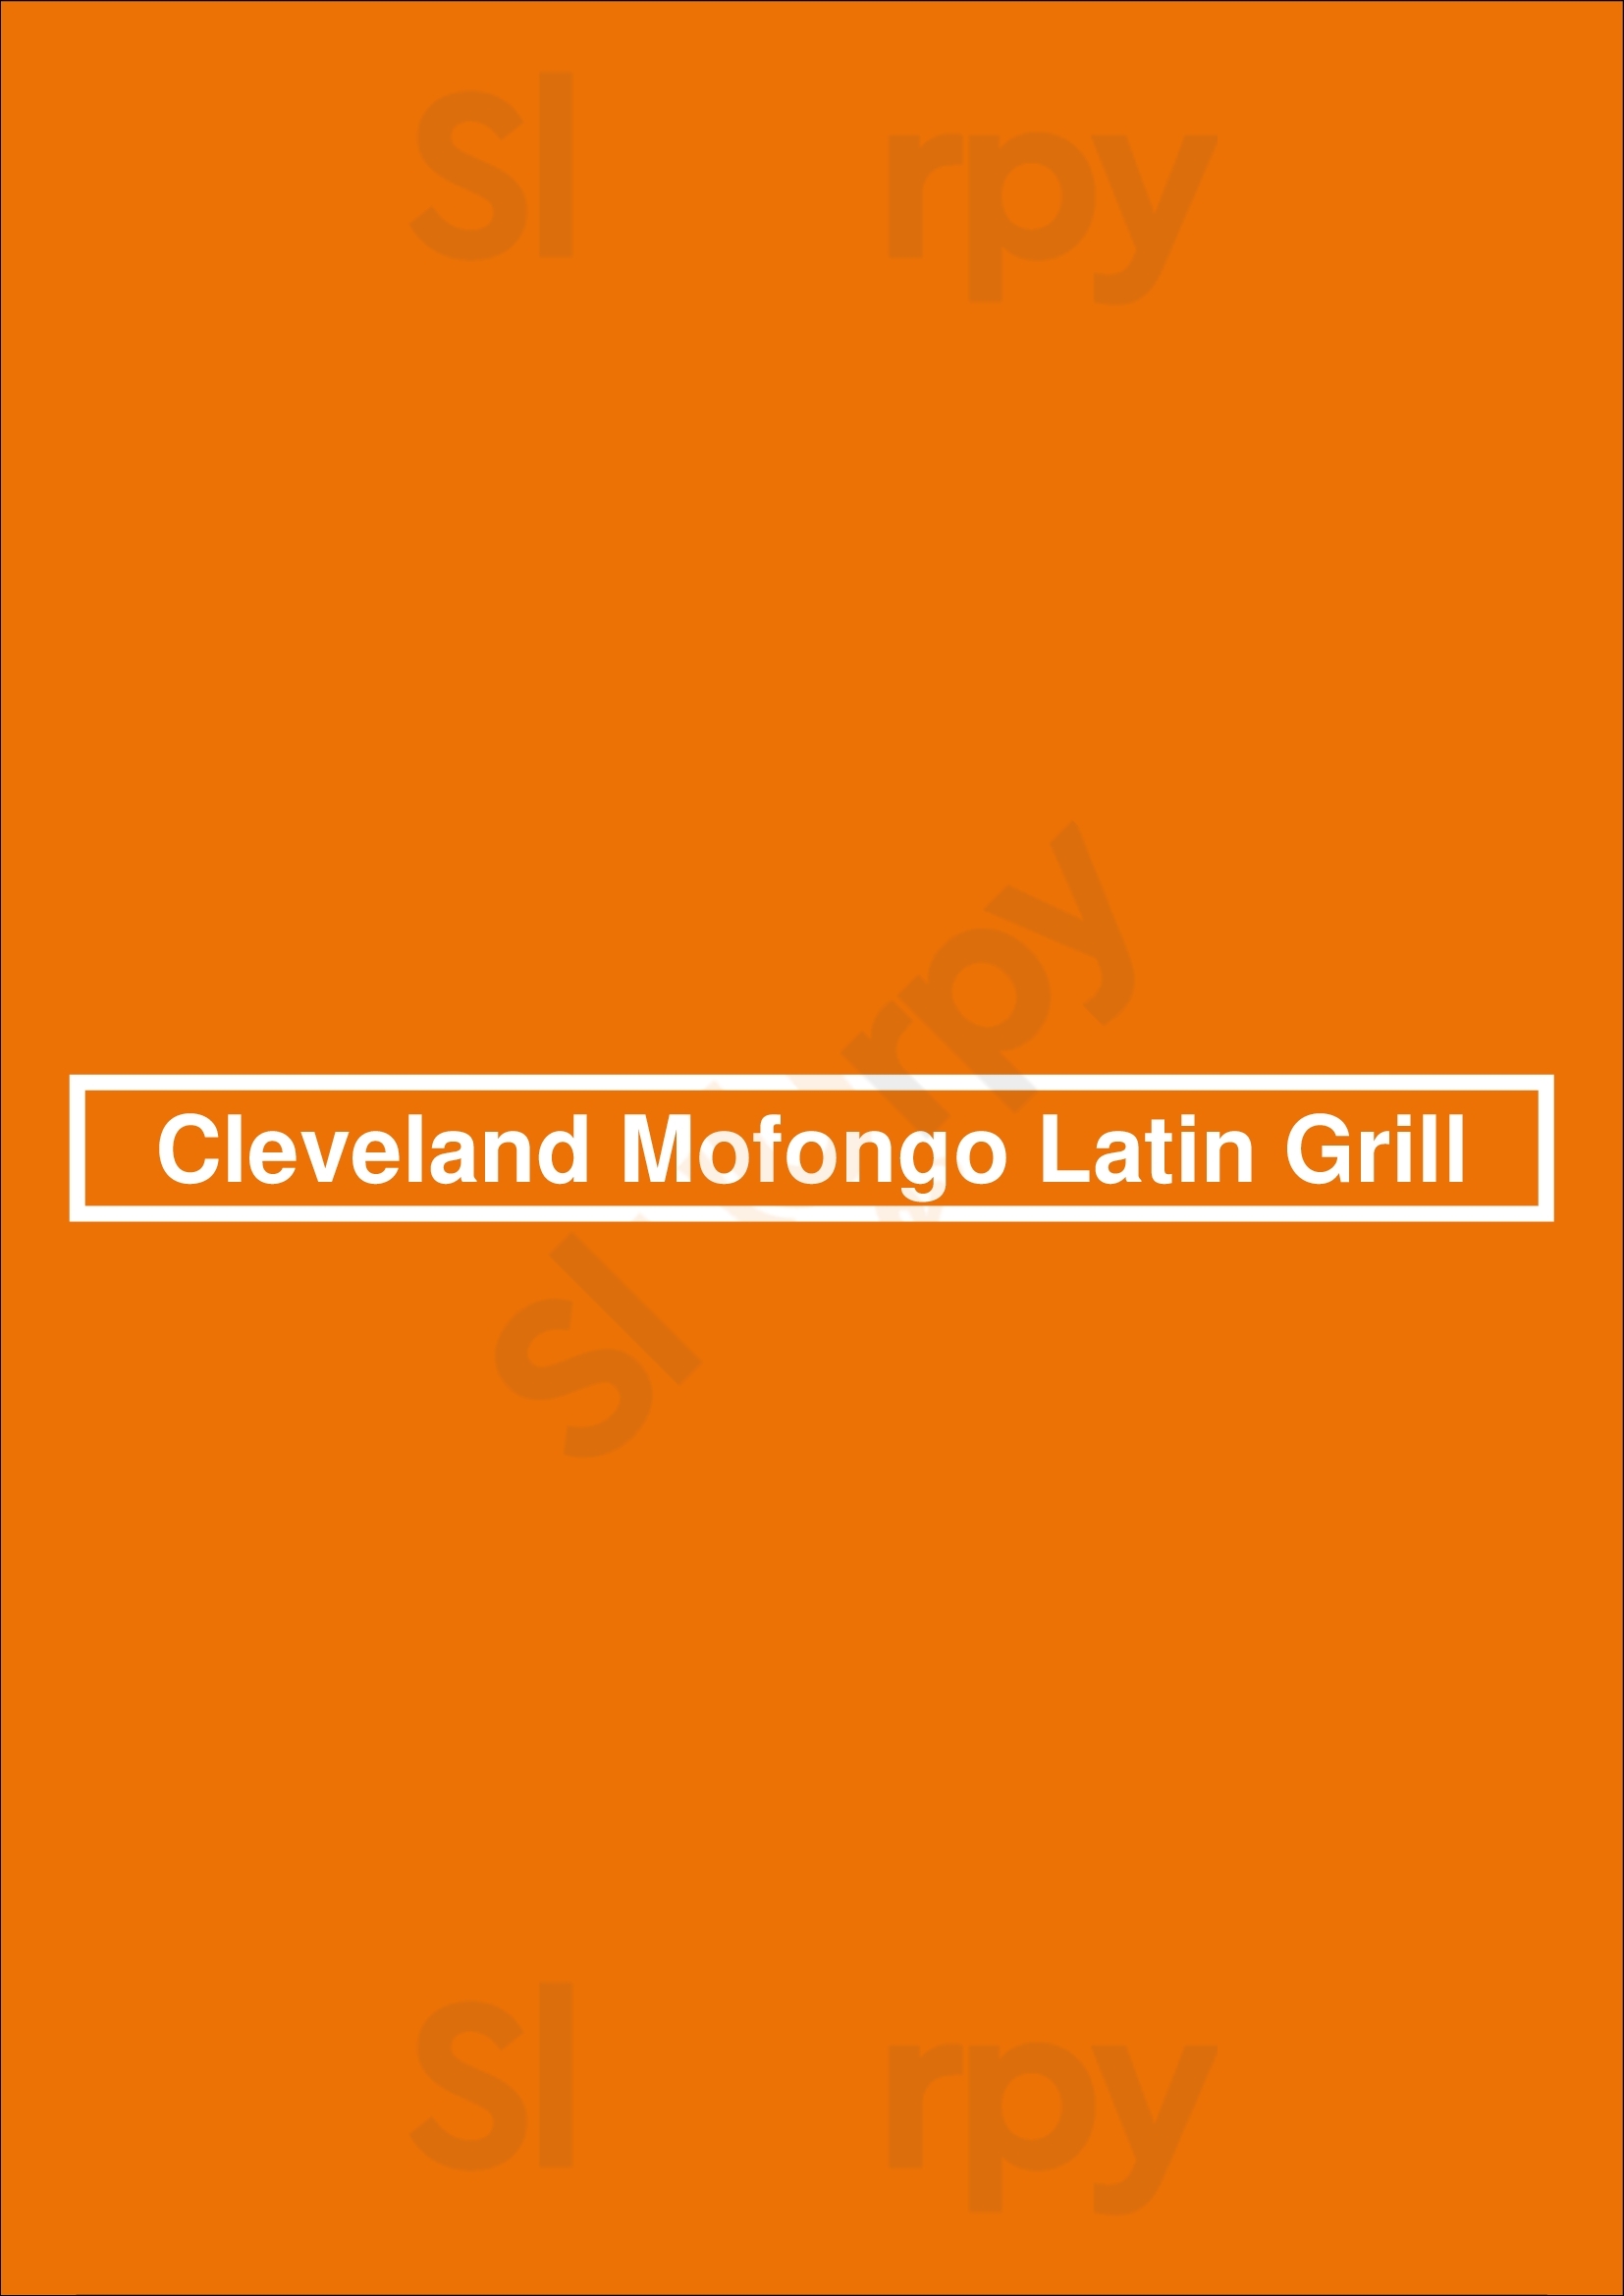 Cleveland Mofongo Latin Grill Cleveland Menu - 1